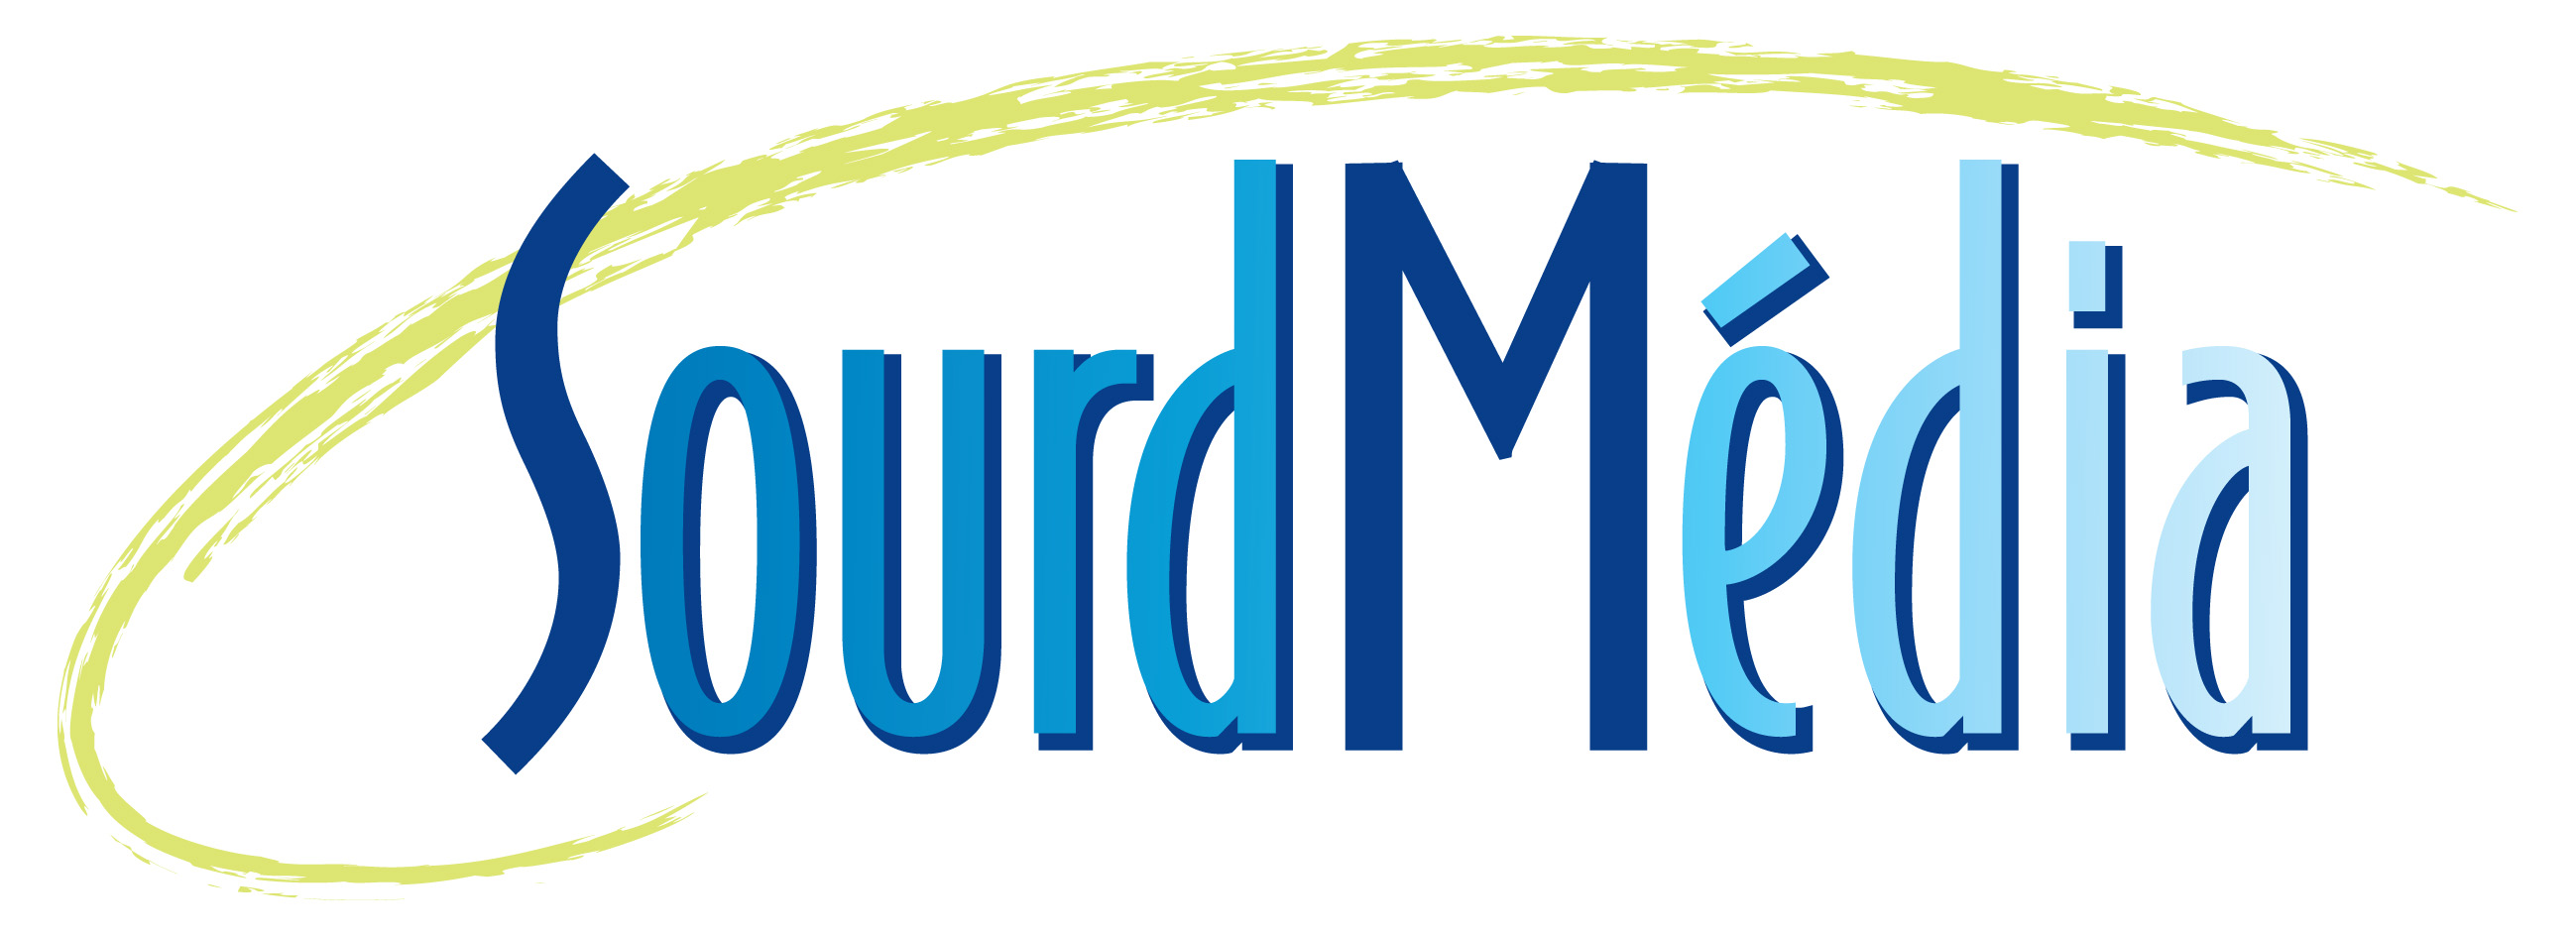 Logo de Sourdmédia en grand format